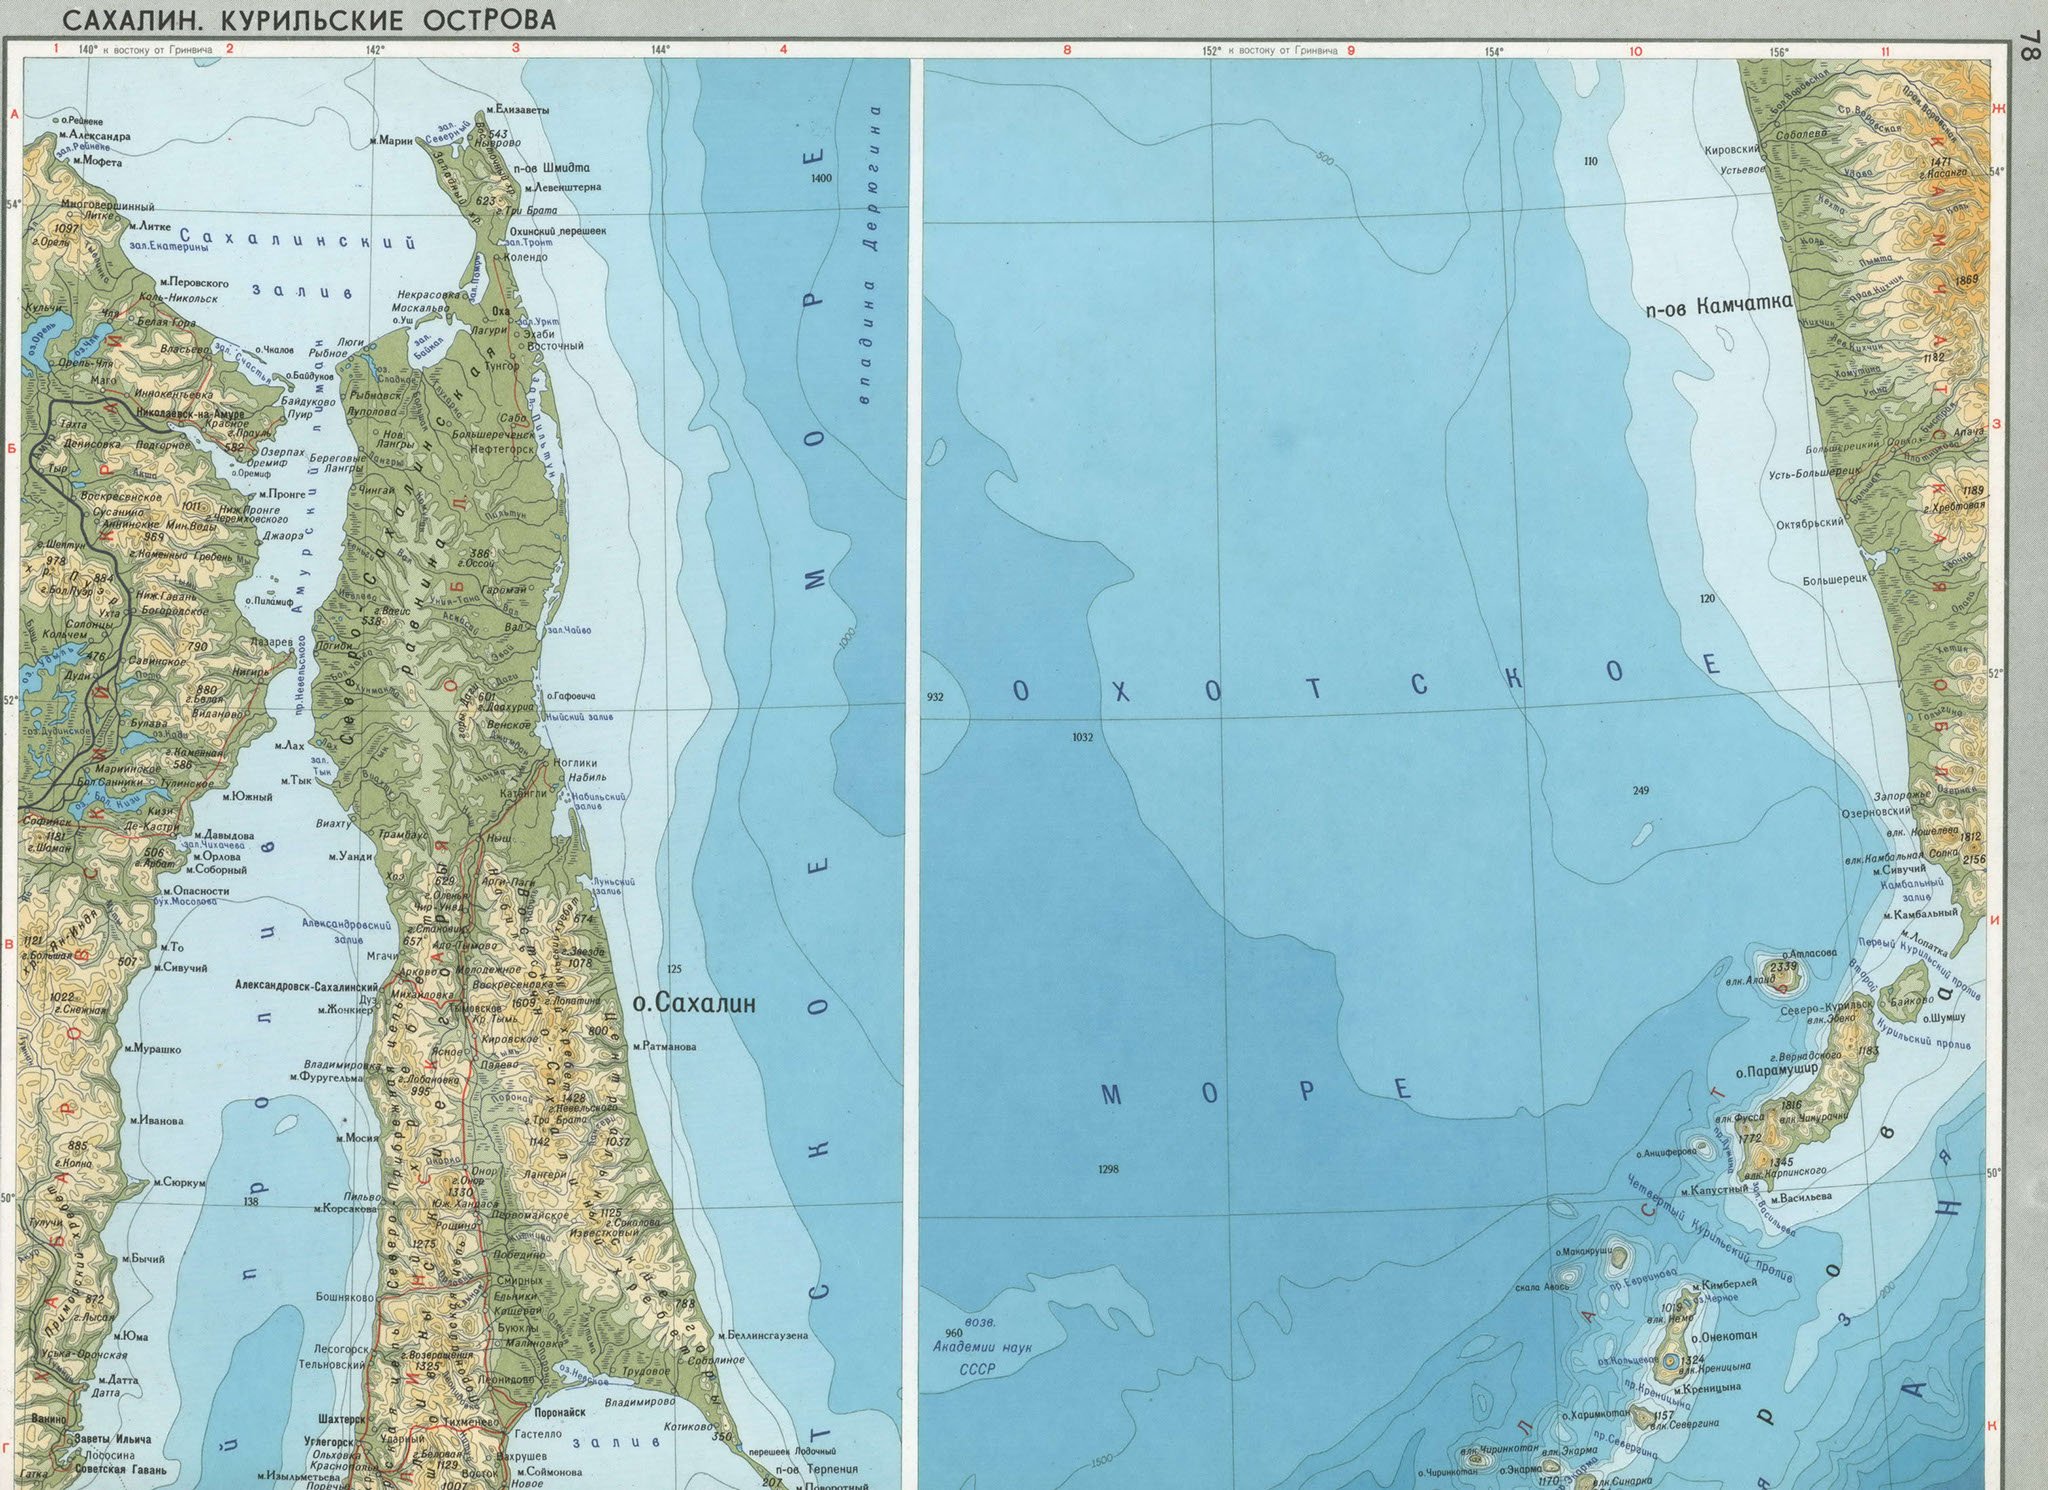 Покажи сахалин на карте россии. Остров Сахалин на карте. Полуостров Сахалин на карте. Карта острова Сахалин карта острова Сахалин.